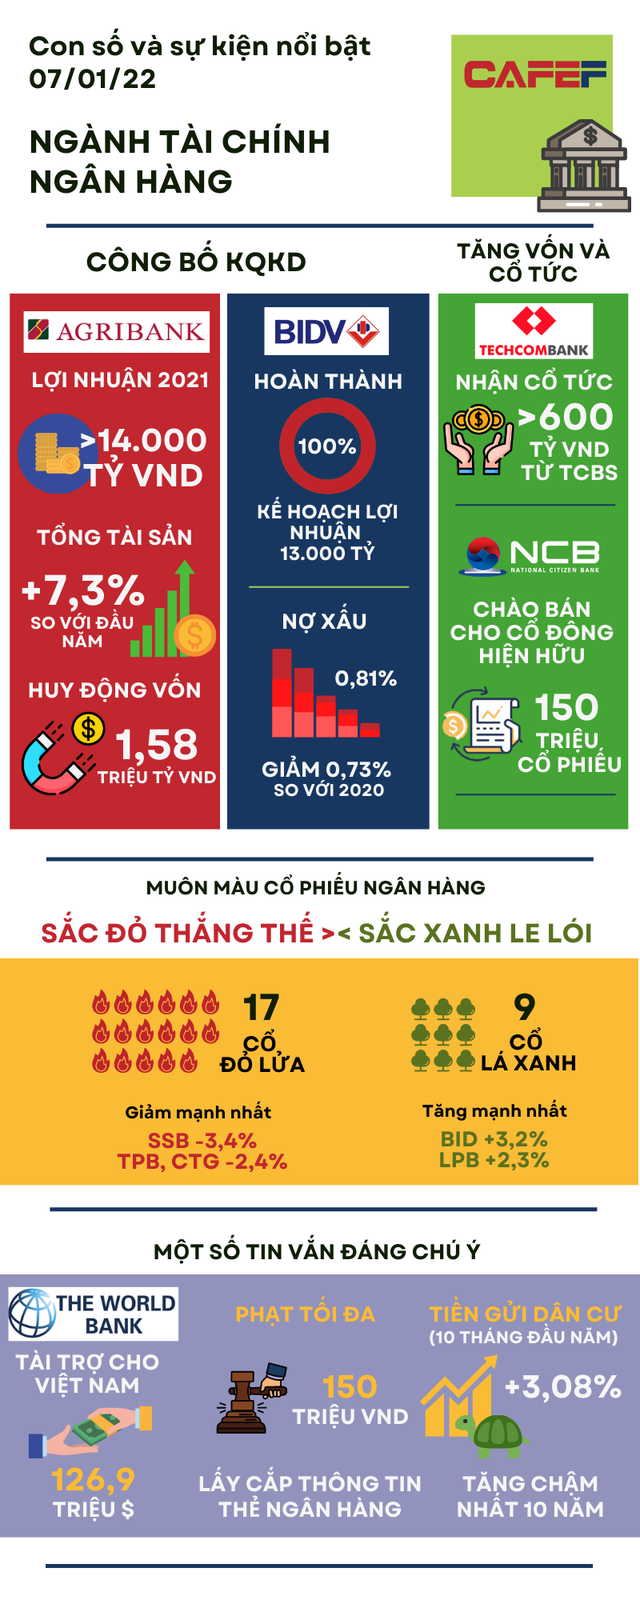 [Infographic] Con số và sự kiện tài chính ngân hàng đáng chú ý đầu ngày 08/01 - Ảnh 1.